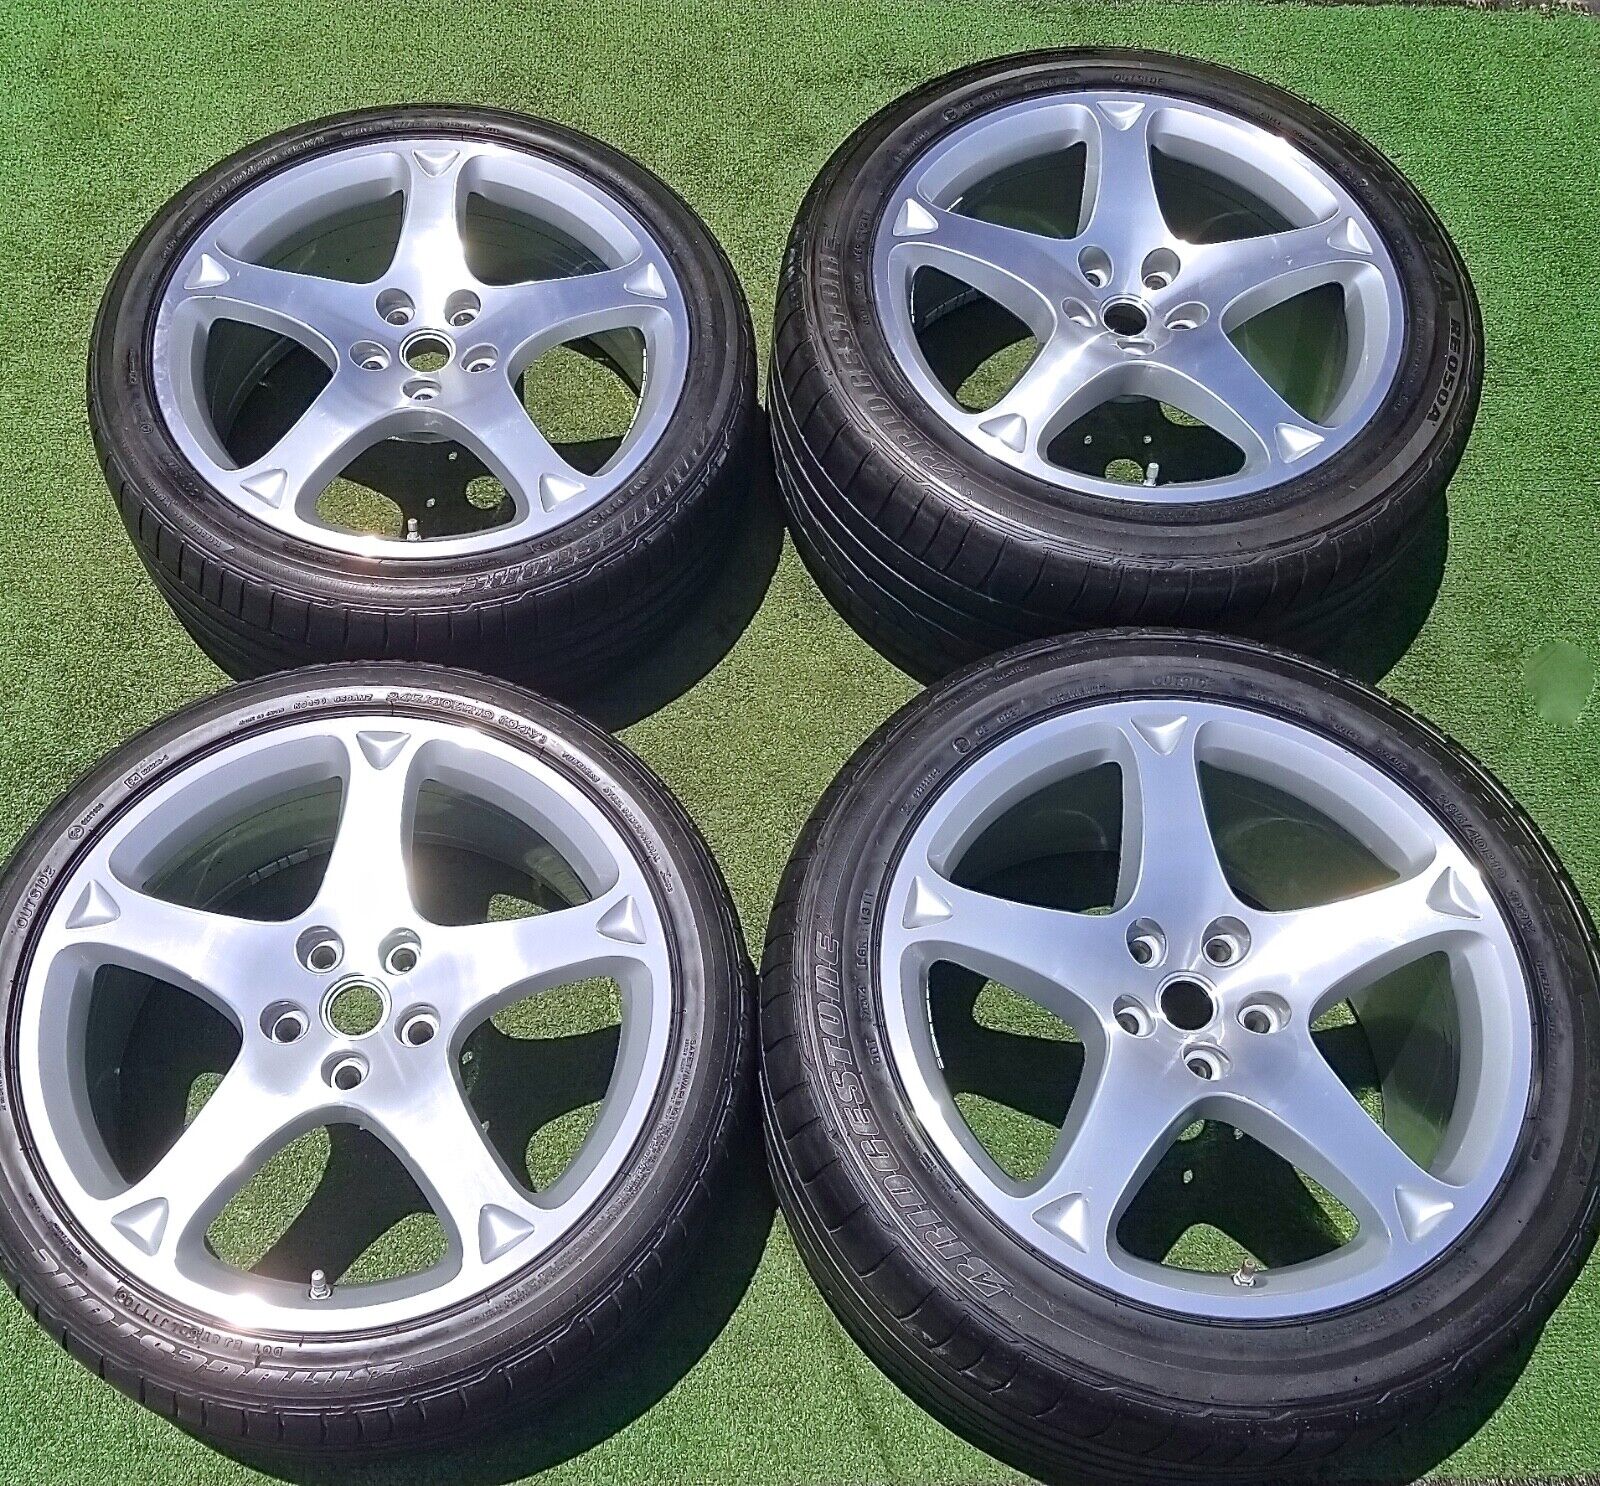 Factory Ferrari California Wheels Tires Set of 4 Authentic Genuine OEM Original